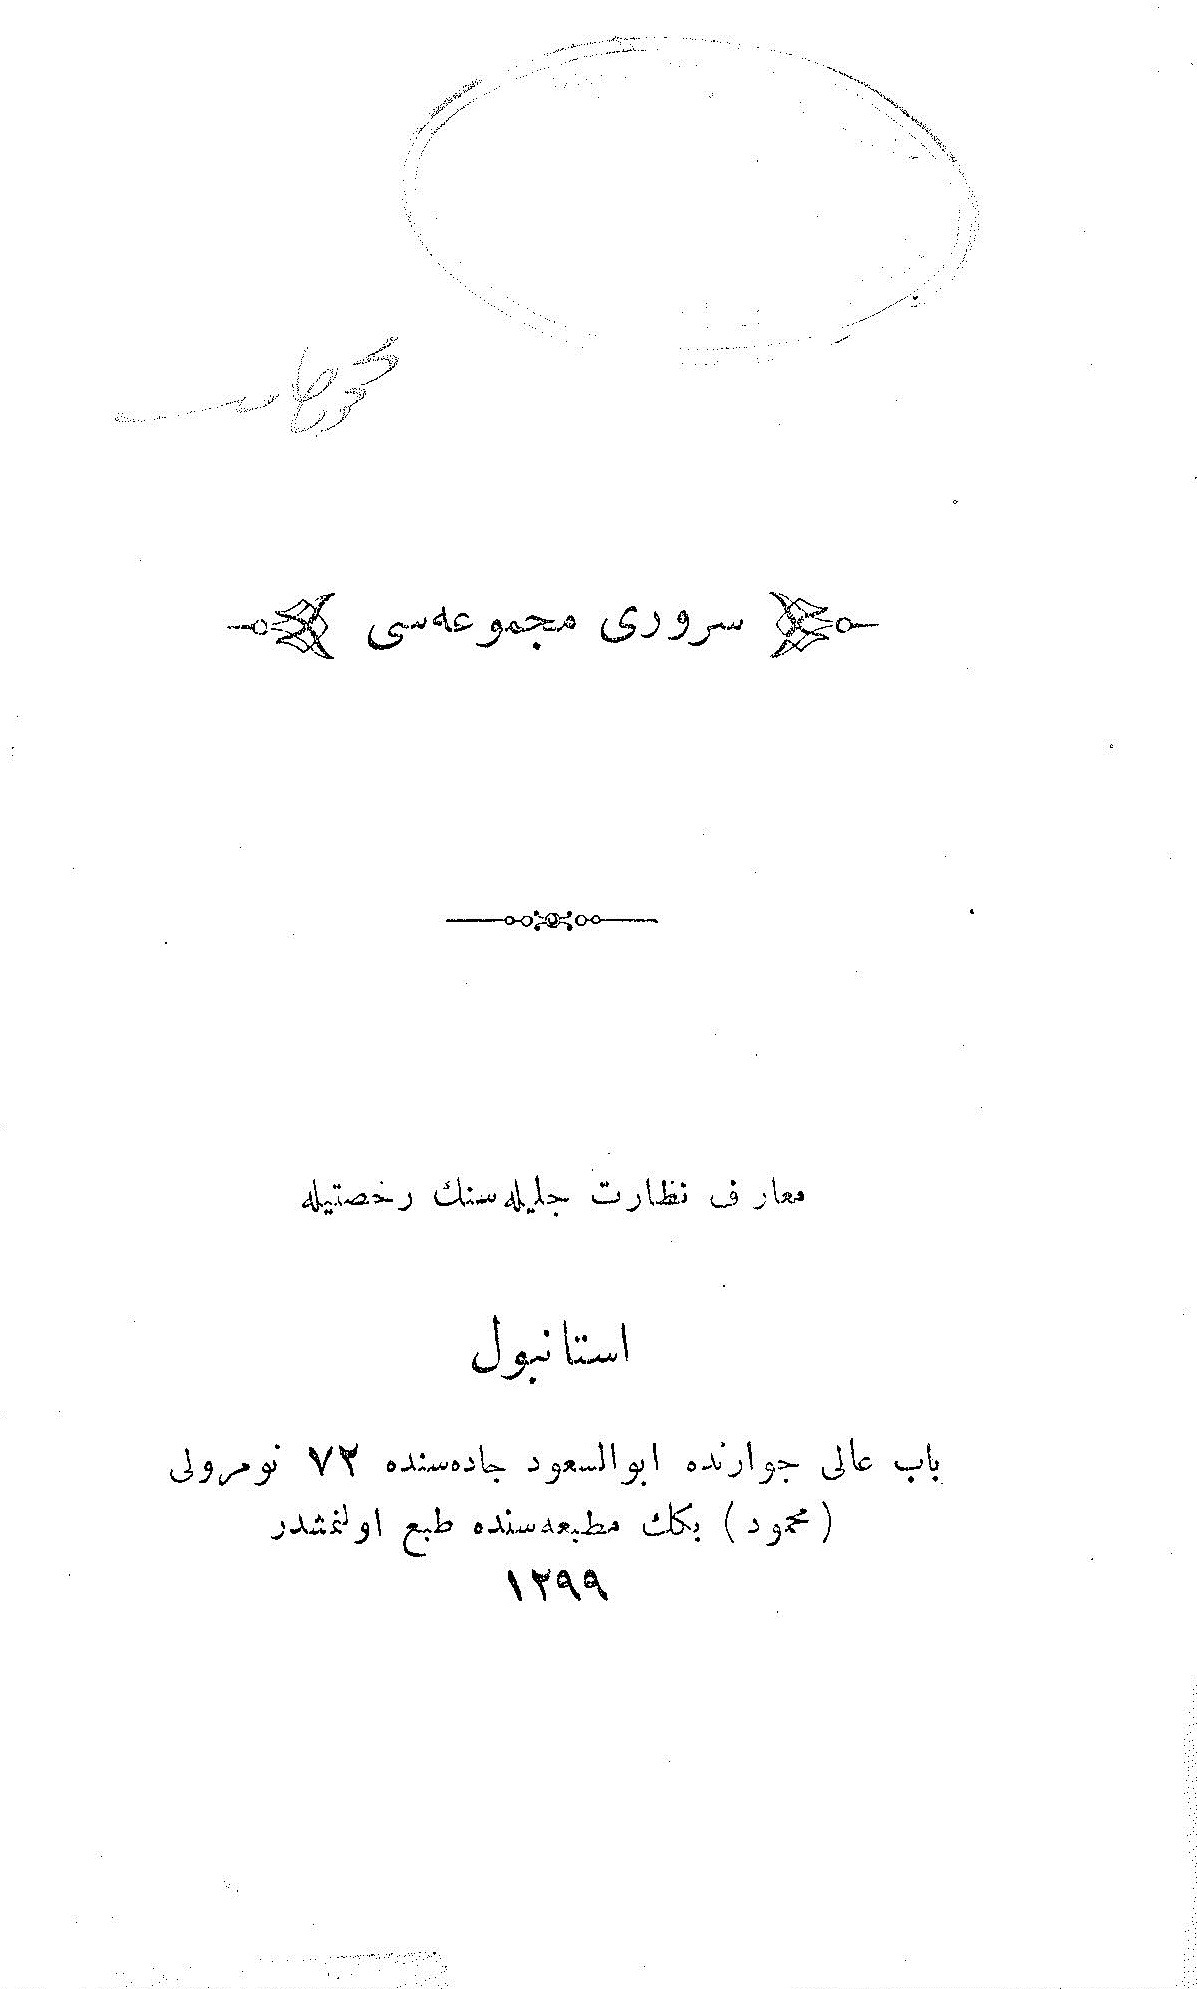 Siruri Mecmuasi-Ali Osmanın Önemli Tarixleri-Ahmed Cevdet-Osman Türkcesi-Ebced-1299-110s